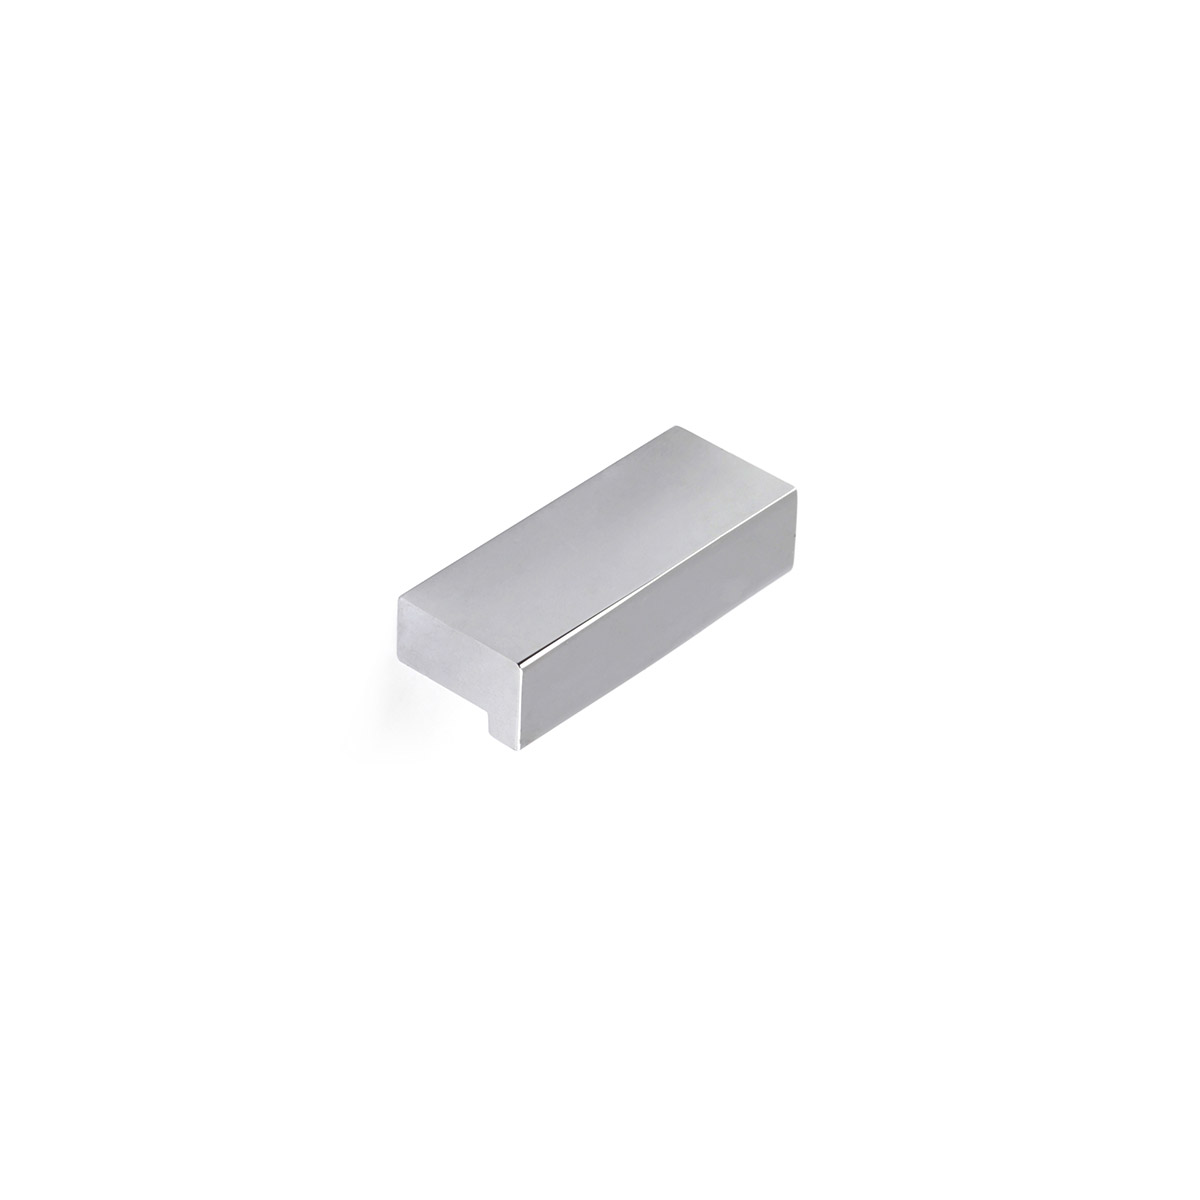 Asa de aluminio con acabado cromo brillo, dimensiones: 44x12x18mm entrepuntos: 32mm